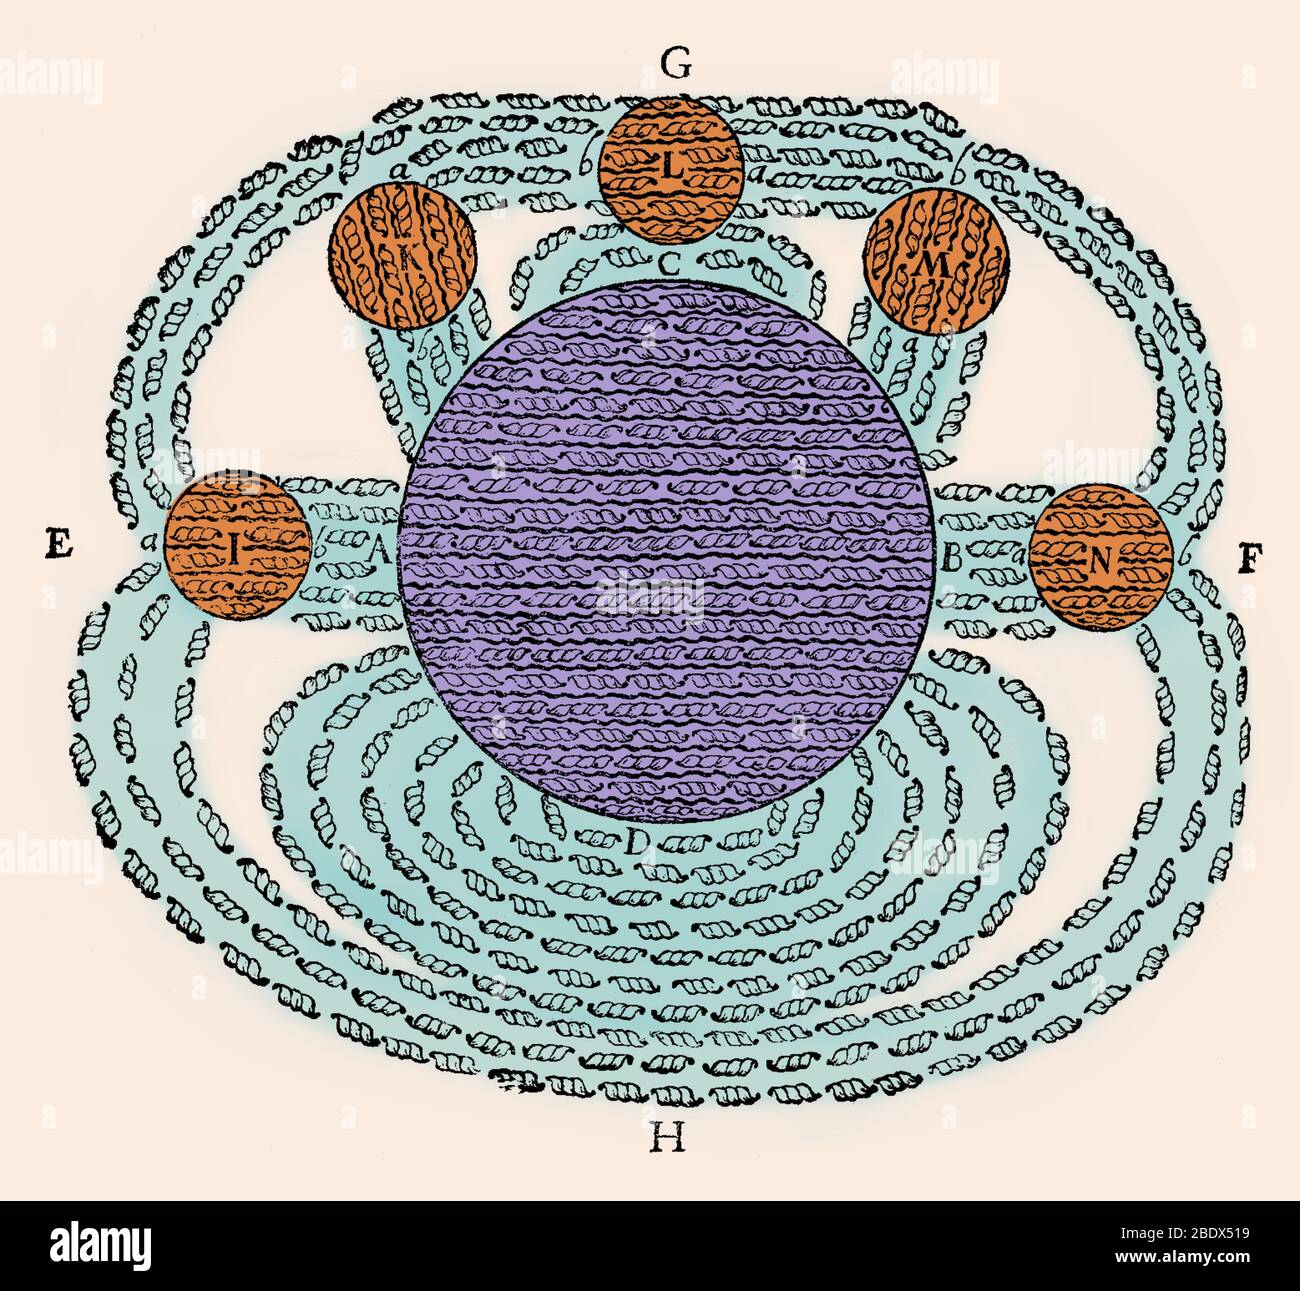 Campo magnético por René Descartes, desde sus Principia Philosophiae, 1644. Este fue uno de los primeros dibujos del concepto de un campo magnético. Se muestra el campo magnético de la tierra (D) atraer varias mesas lodestones (I, K, L, M, N) e ilustra su teoría del magnetismo. Descartes propone que la atracción magnética fue provocada por la circulación de diminutas partículas helicoidales, piezas roscadas (muestra), que circula a través de los poros de roscado paralelo a través de imanes, en el polo sur (A), a través del polo norte (B), y luego por el espacio alrededor del imán (G, H) de vuelta hacia el sur Foto de stock